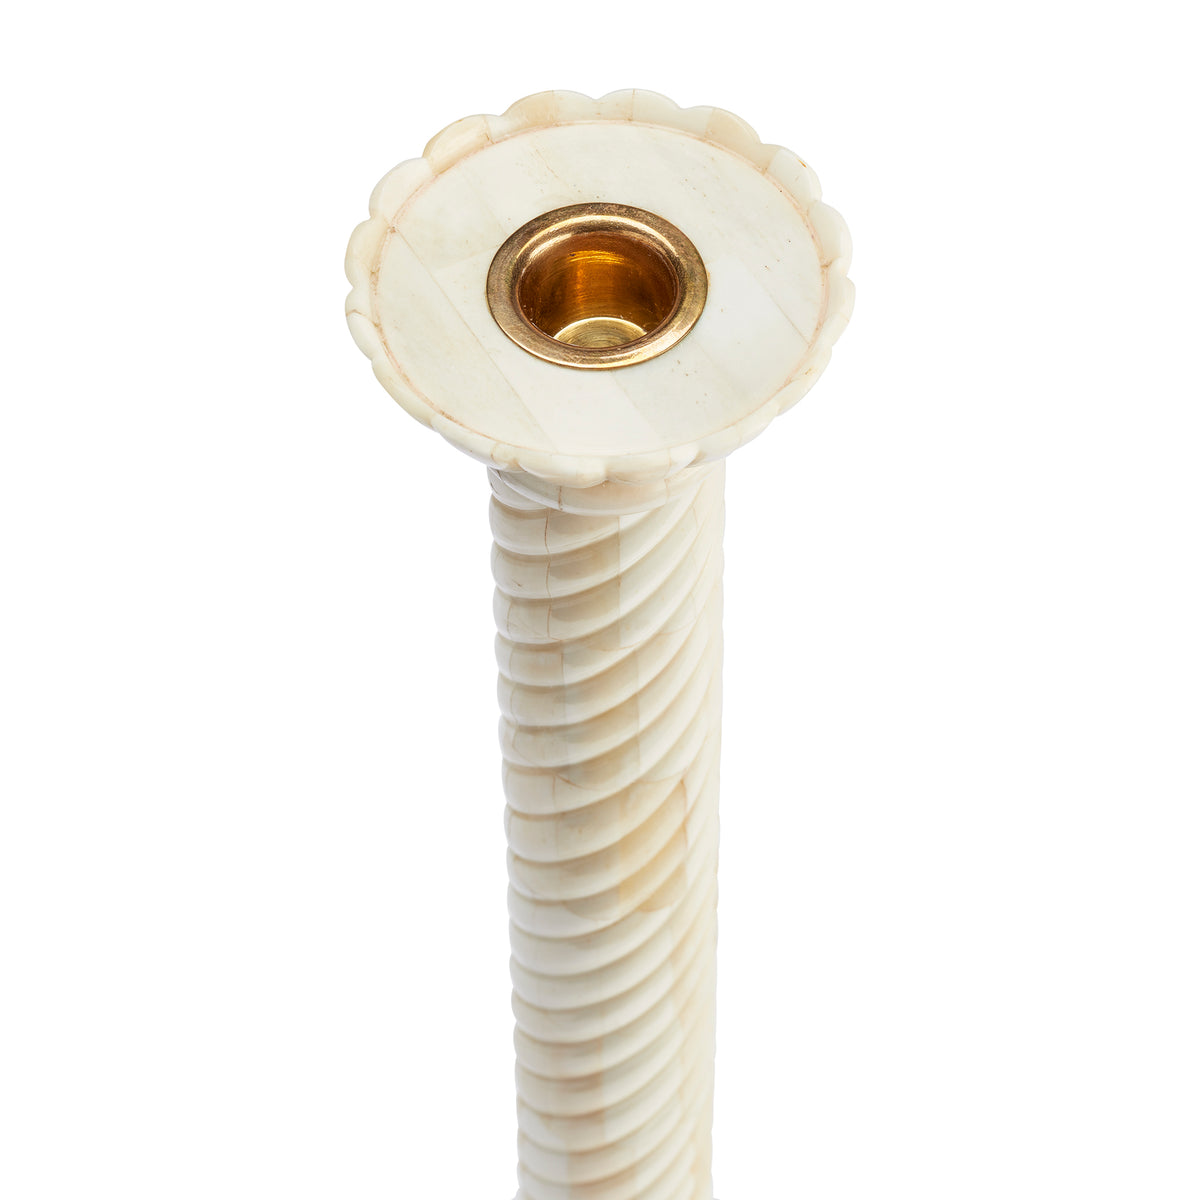 Swirl Bone Candlestick, Small